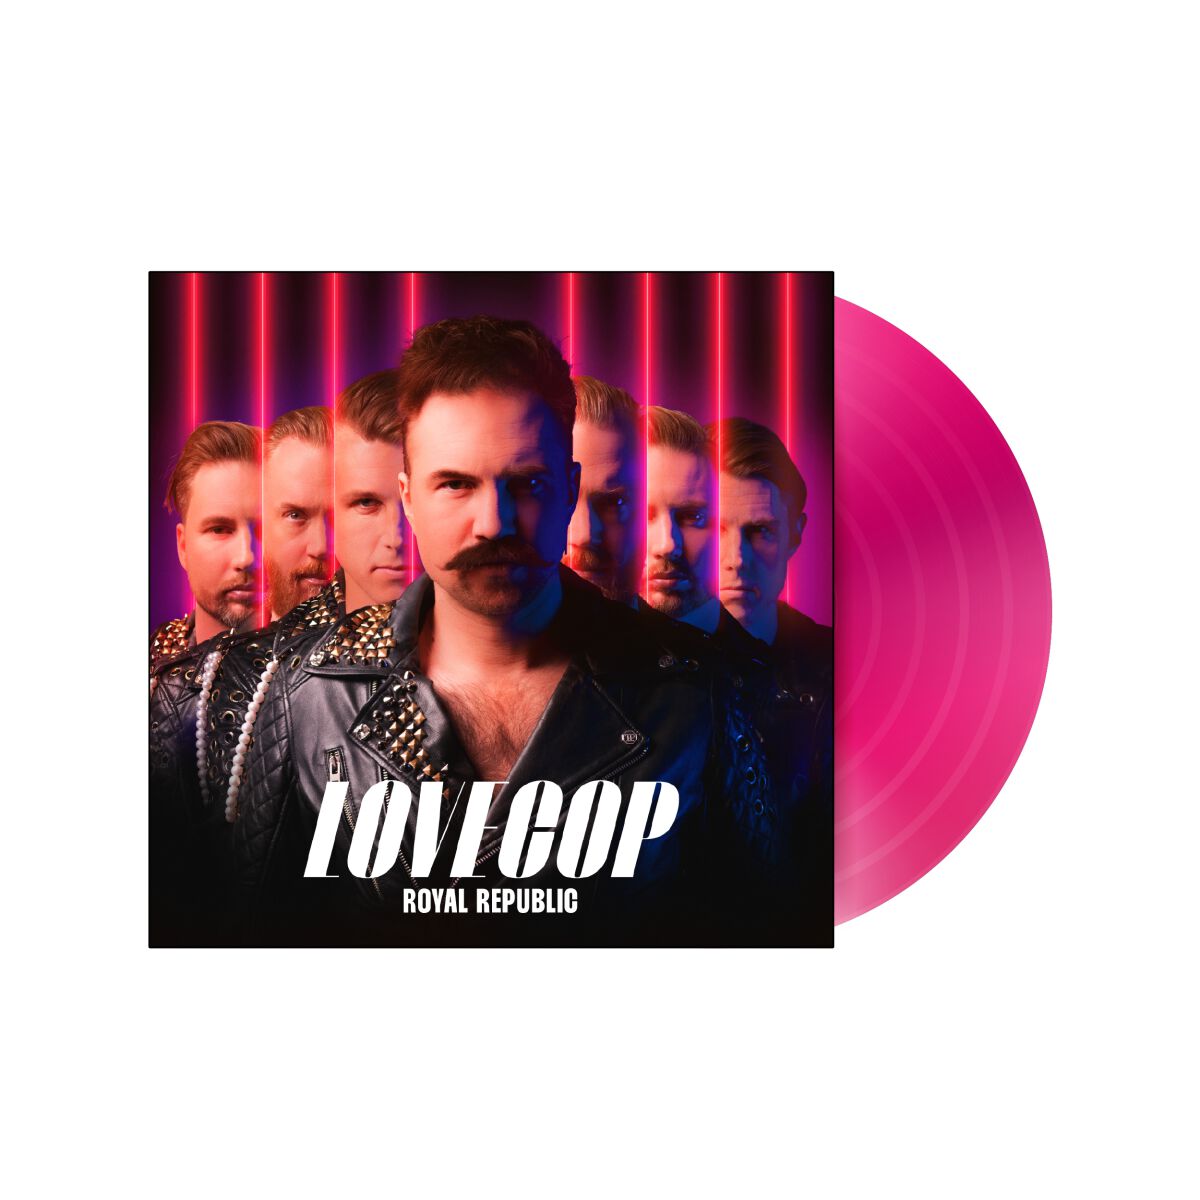 LoveCop von Royal Republic - LP (Coloured, Limited Edition)